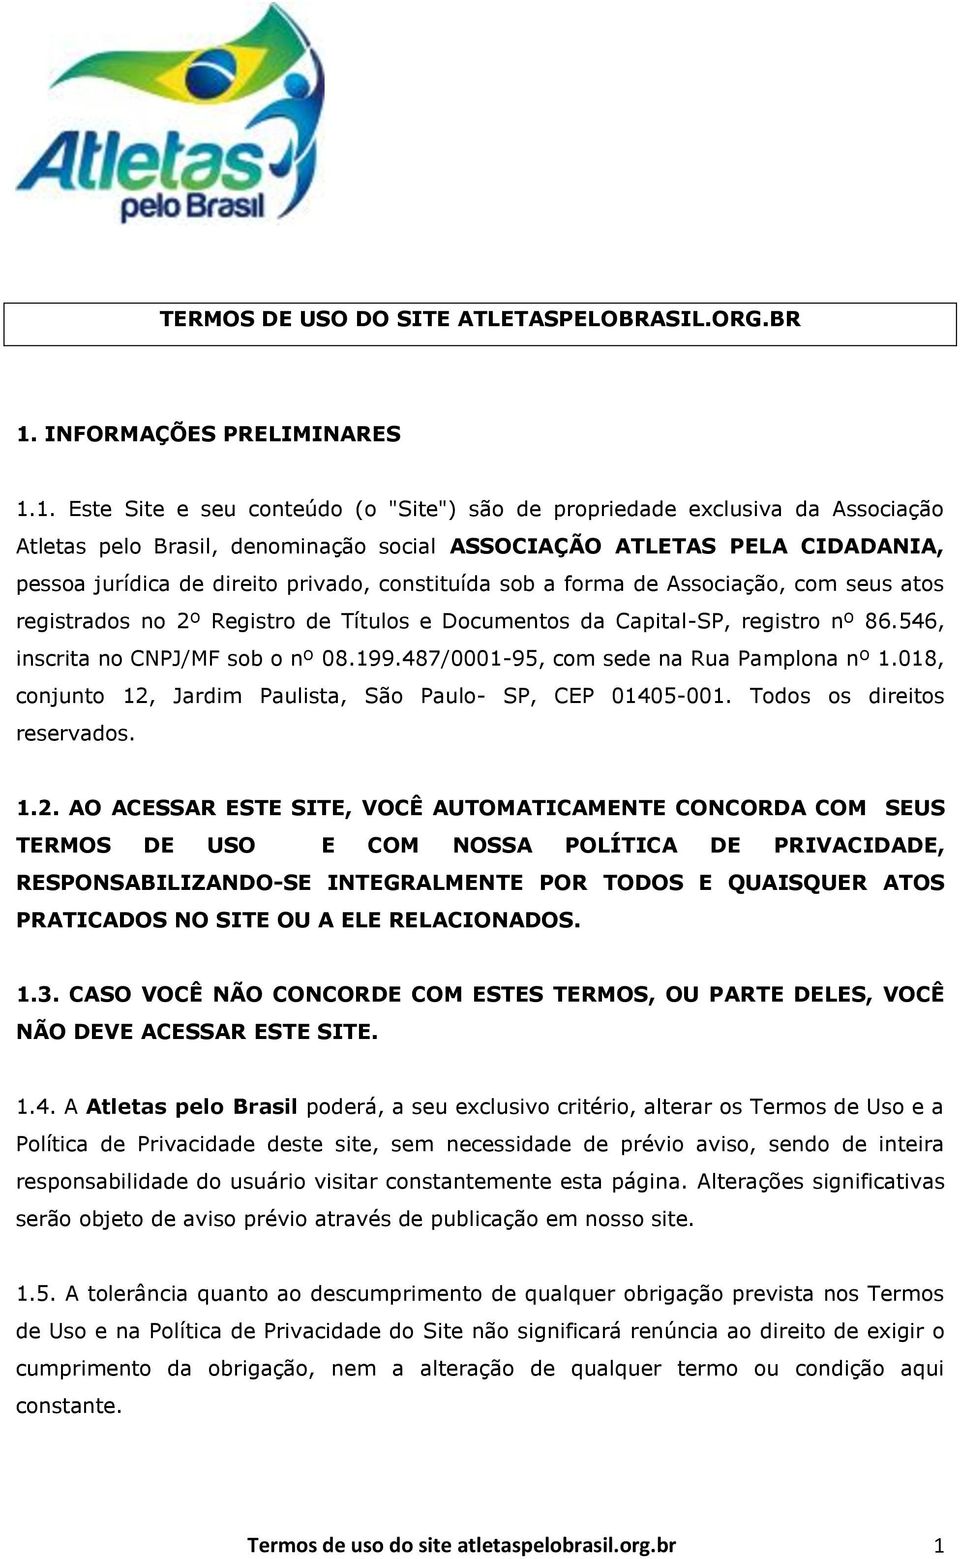 1. Este Site e seu conteúdo (o "Site") são de propriedade exclusiva da Associação Atletas pelo Brasil, denominação social ASSOCIAÇÃO ATLETAS PELA CIDADANIA, pessoa jurídica de direito privado,